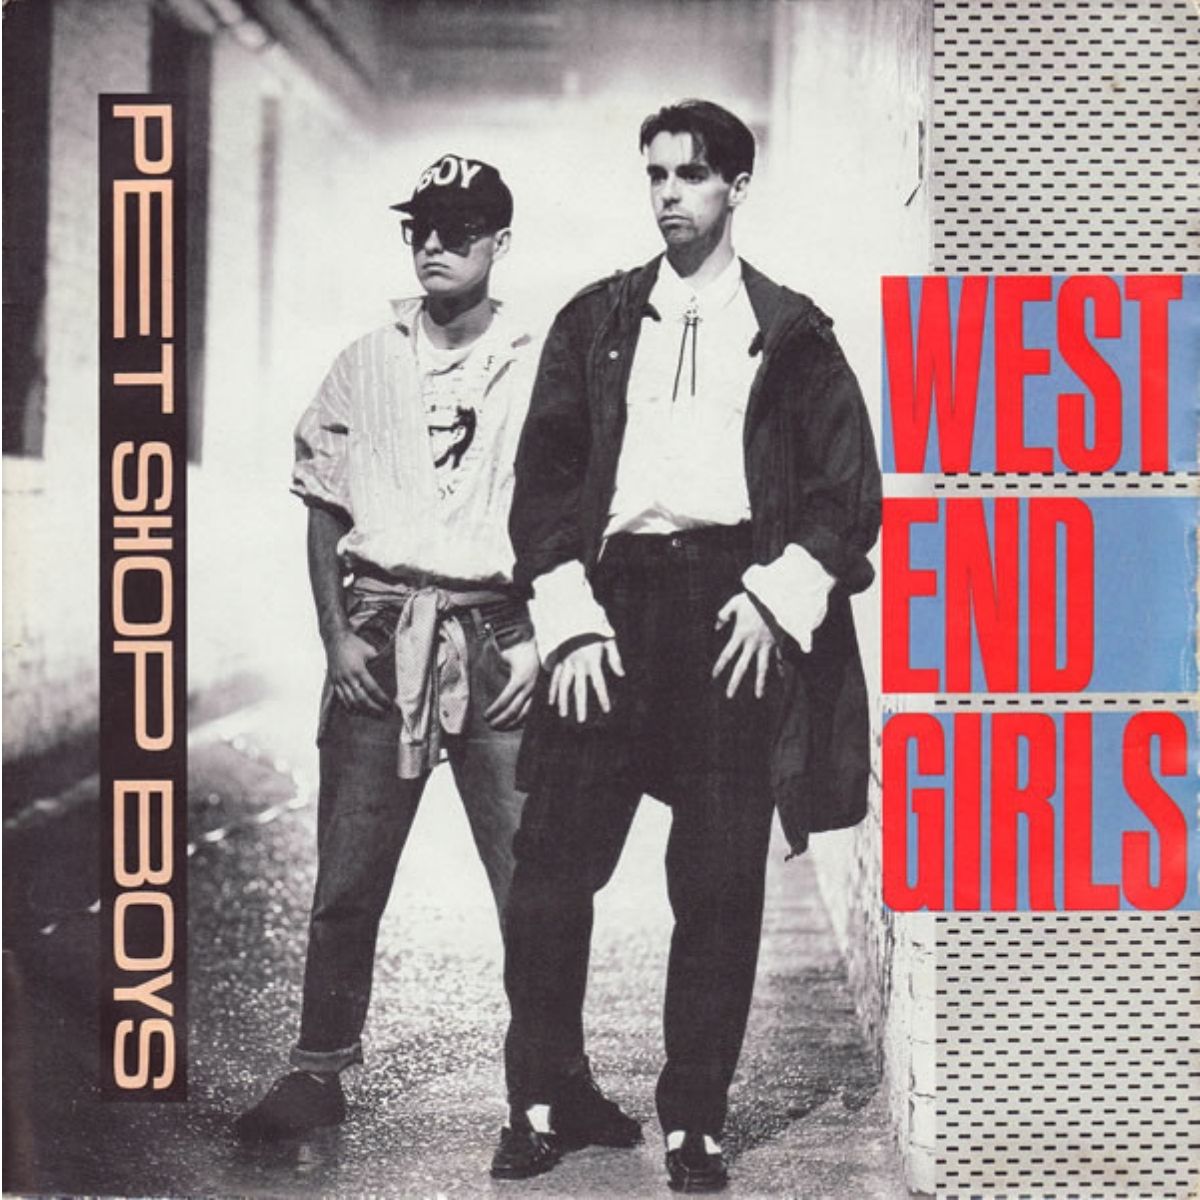 Titelbild der Single "West End Girls" von den Pet Shop Boys